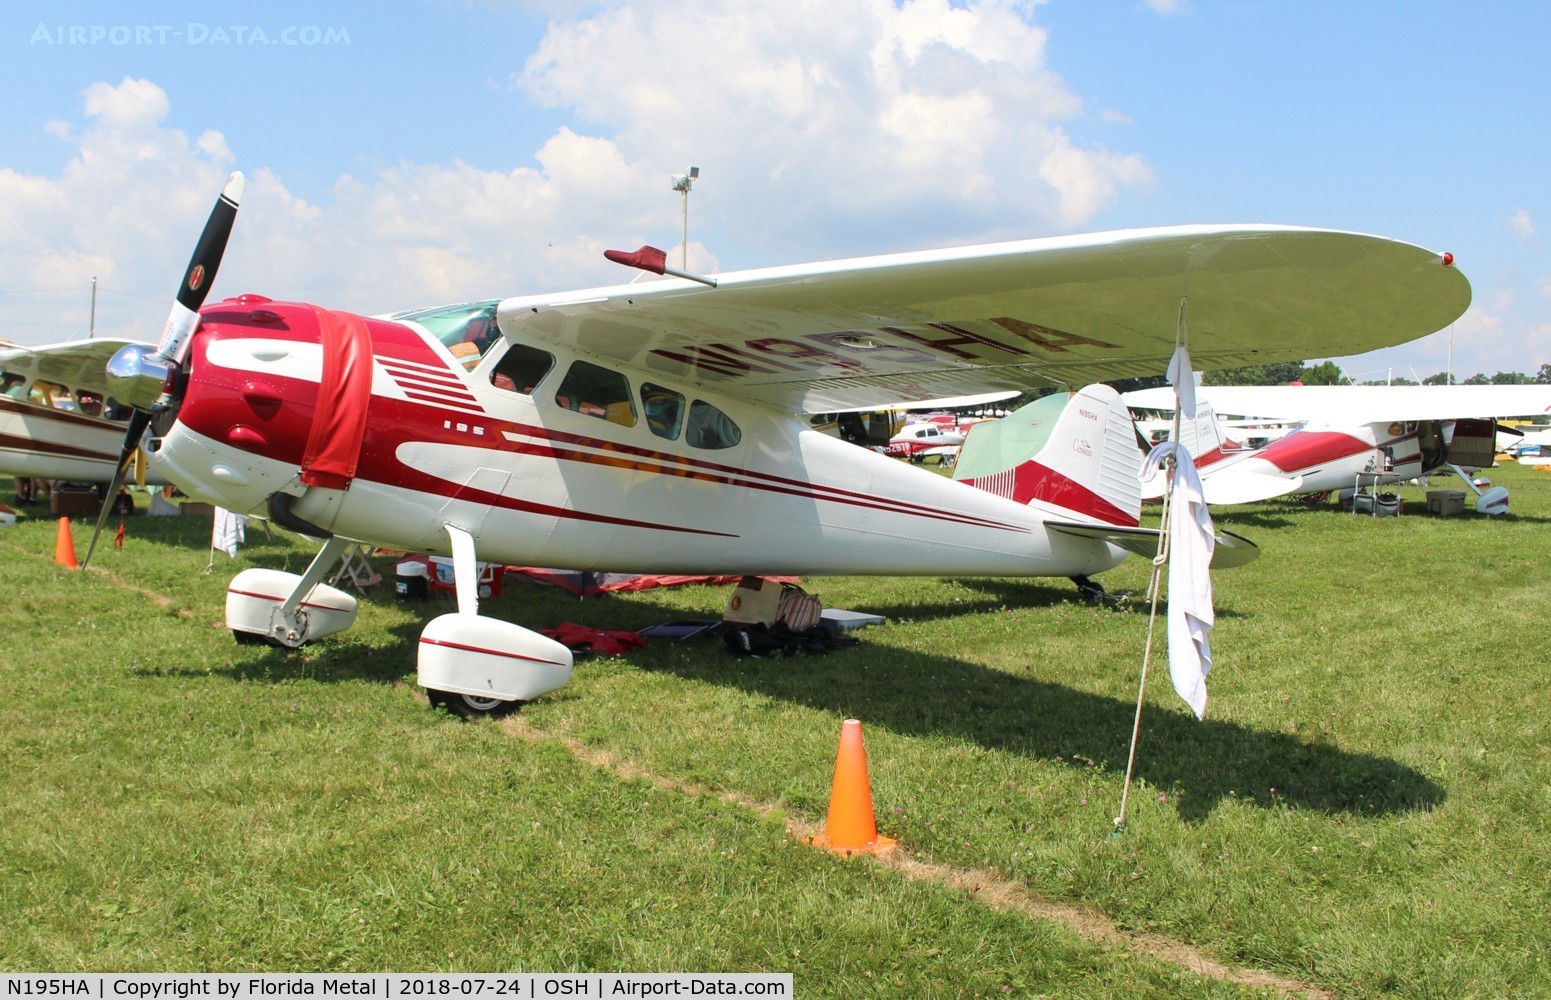 N195HA, 1965 Cessna 195 C/N 7438, Cessna 195